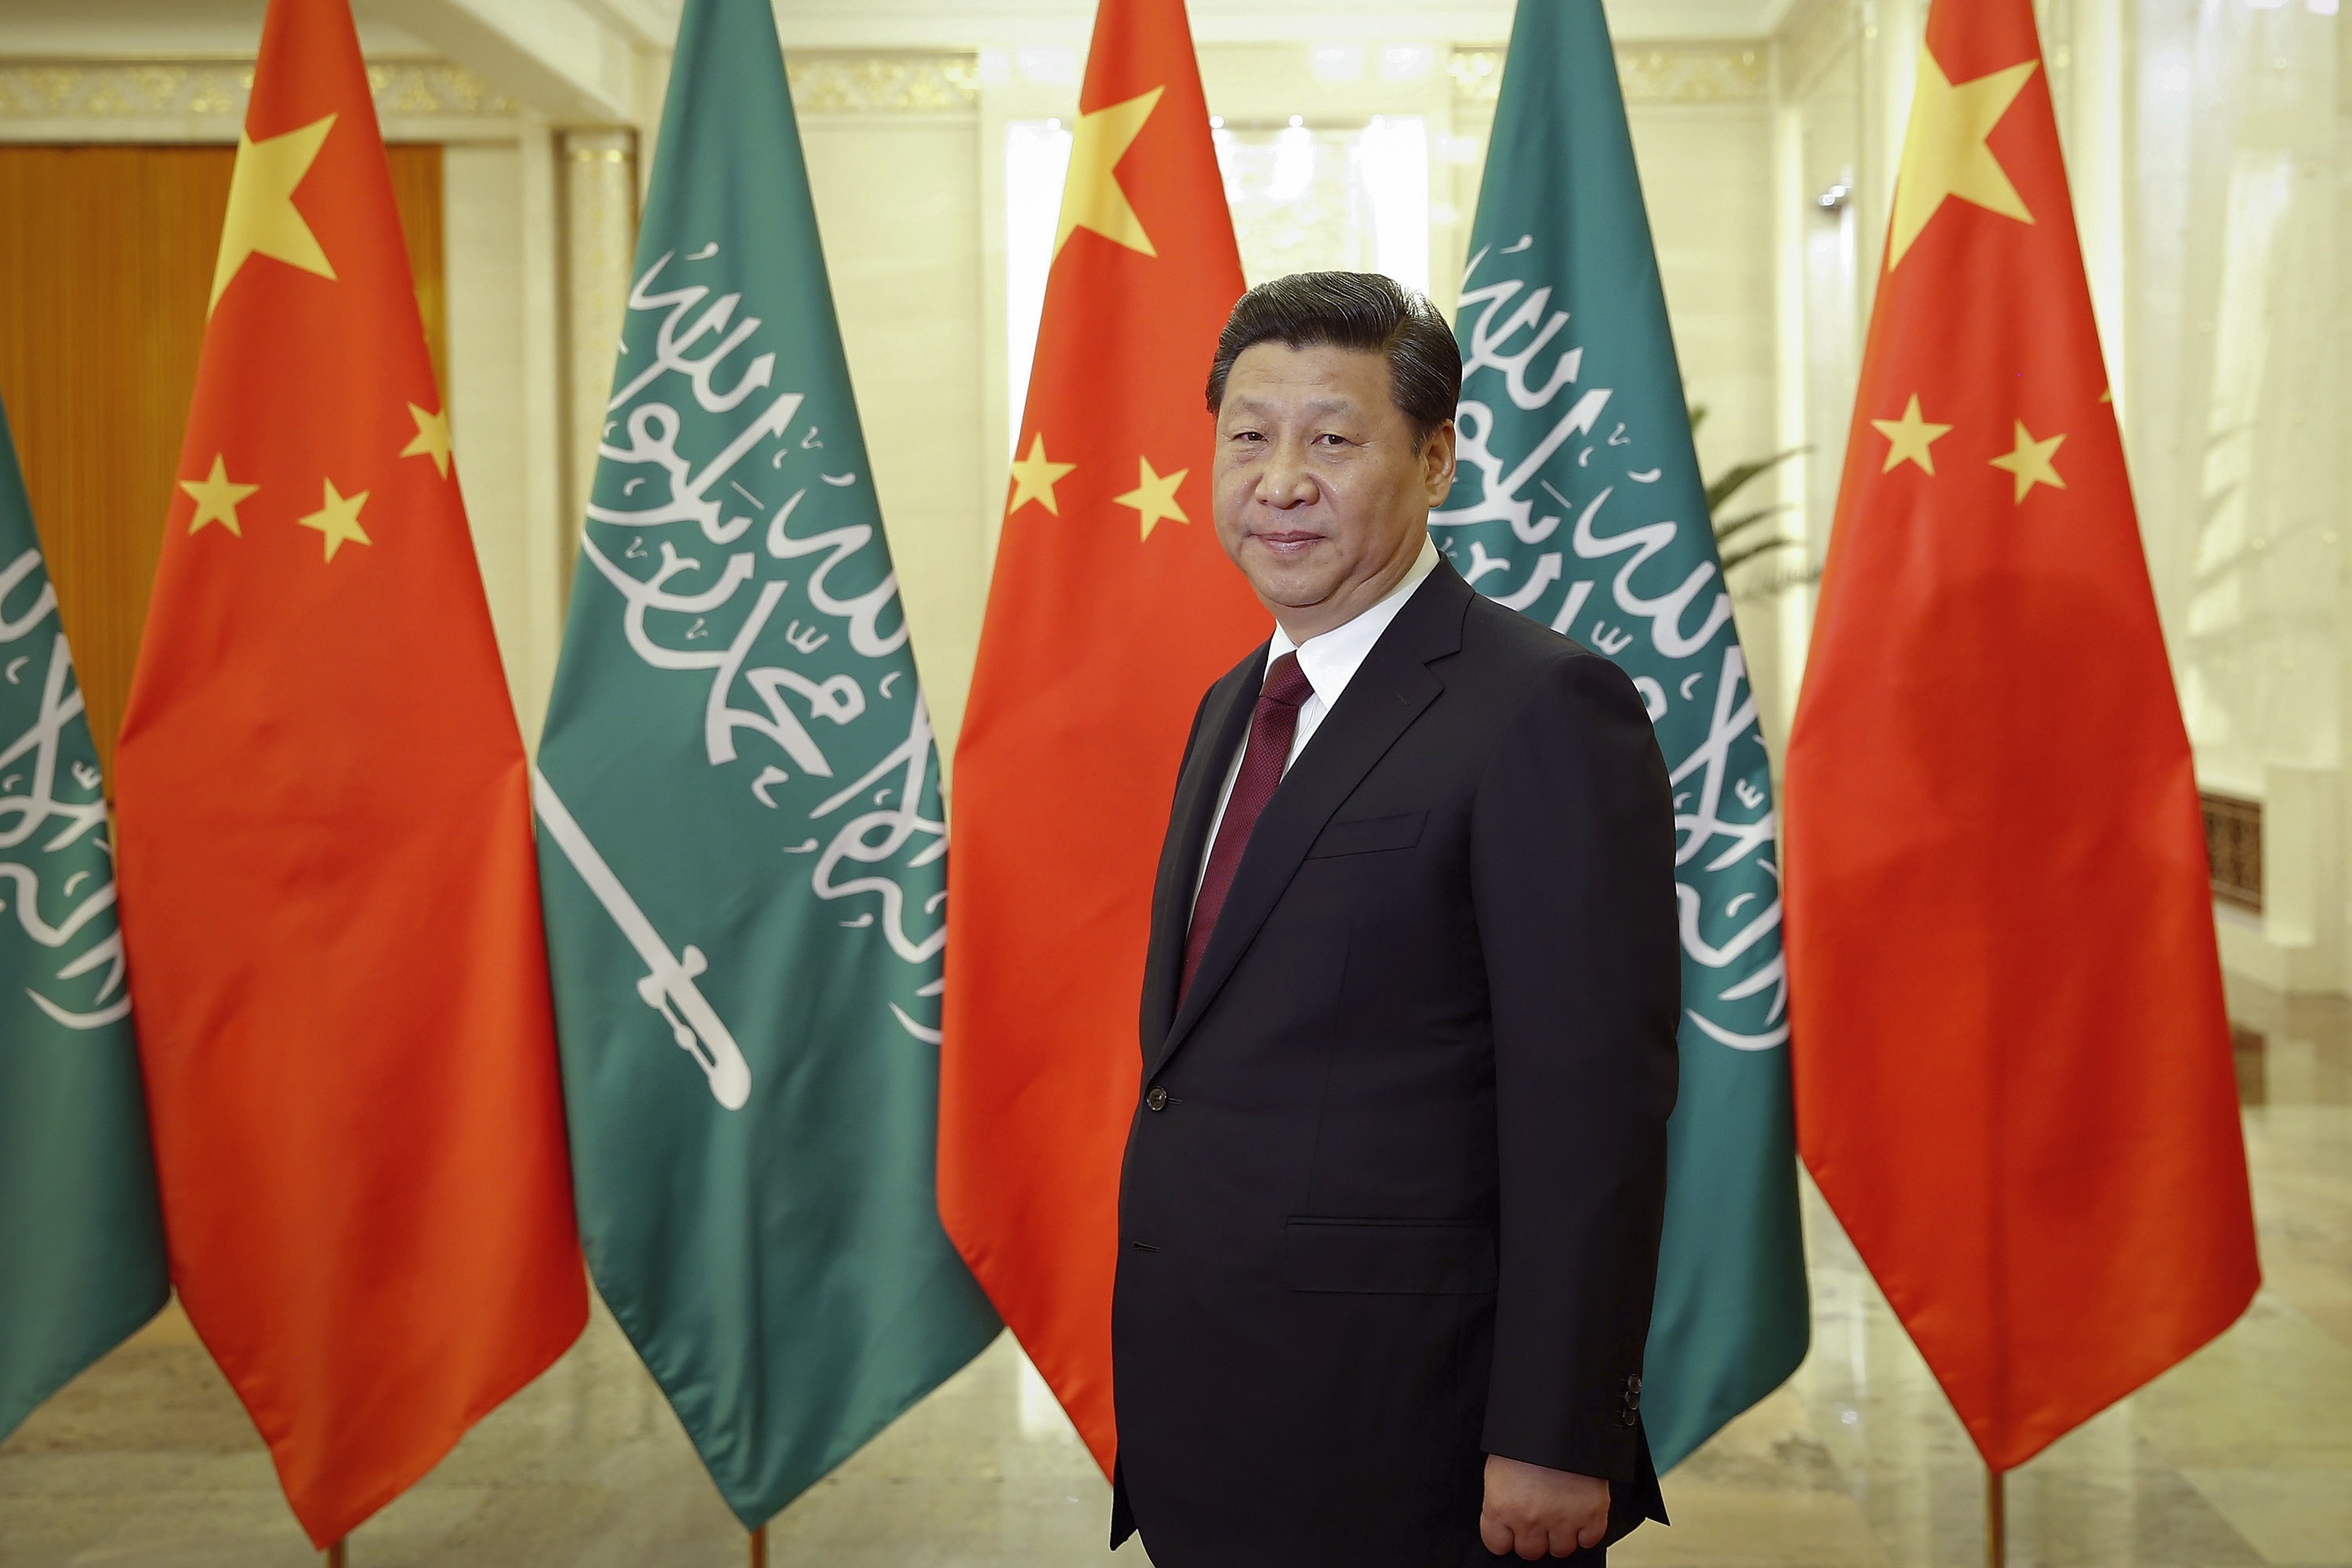 الحضور الاقتصادي الأكبر للصين يتركز في منطقة الخليج وخصوصاً في المملكة العربية السعودية (رويترز)